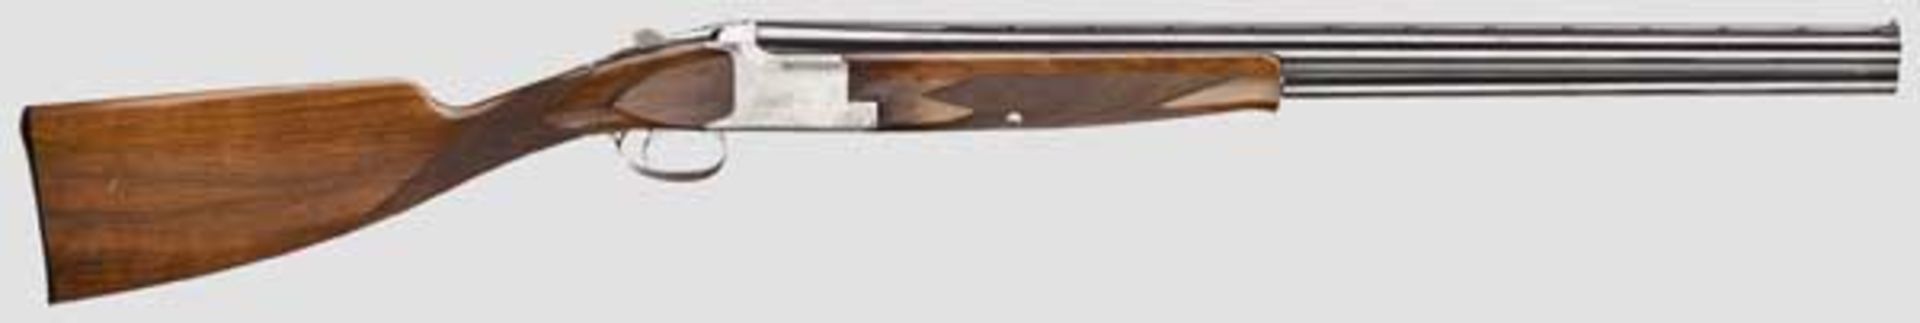 Bockdoppelflinte FN Mod. Jagd B 1 Kal. 12/70, Nr. 19543S73. Blanke Läufe, Länge 70 cm.